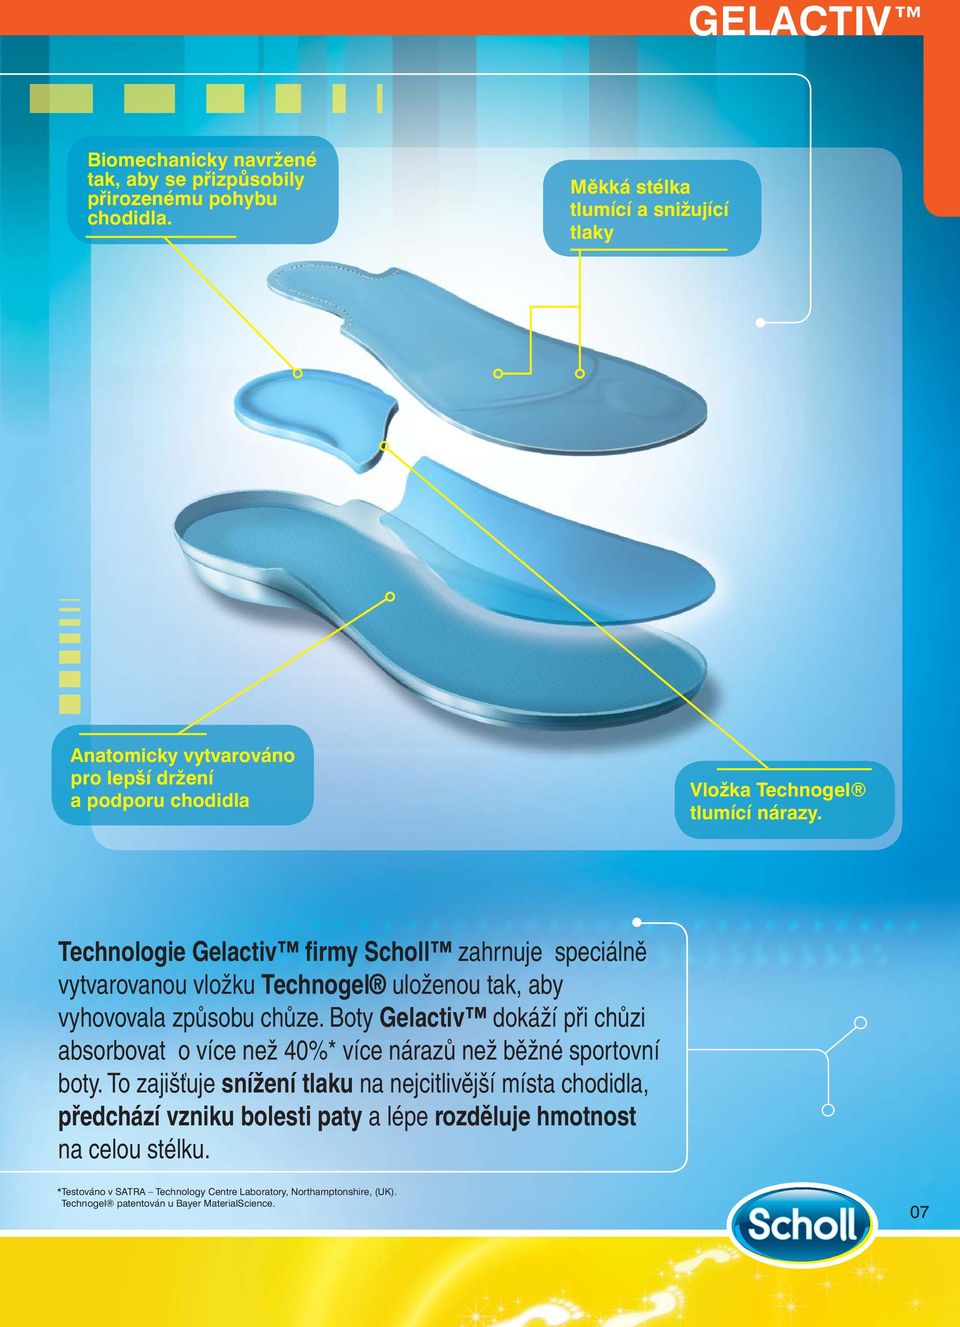 Technologie Gelactiv firmy Scholl zahrnuje speciálně vytvarovanou vložku Technogel uloženou tak, aby vyhovovala způsobu chůze.